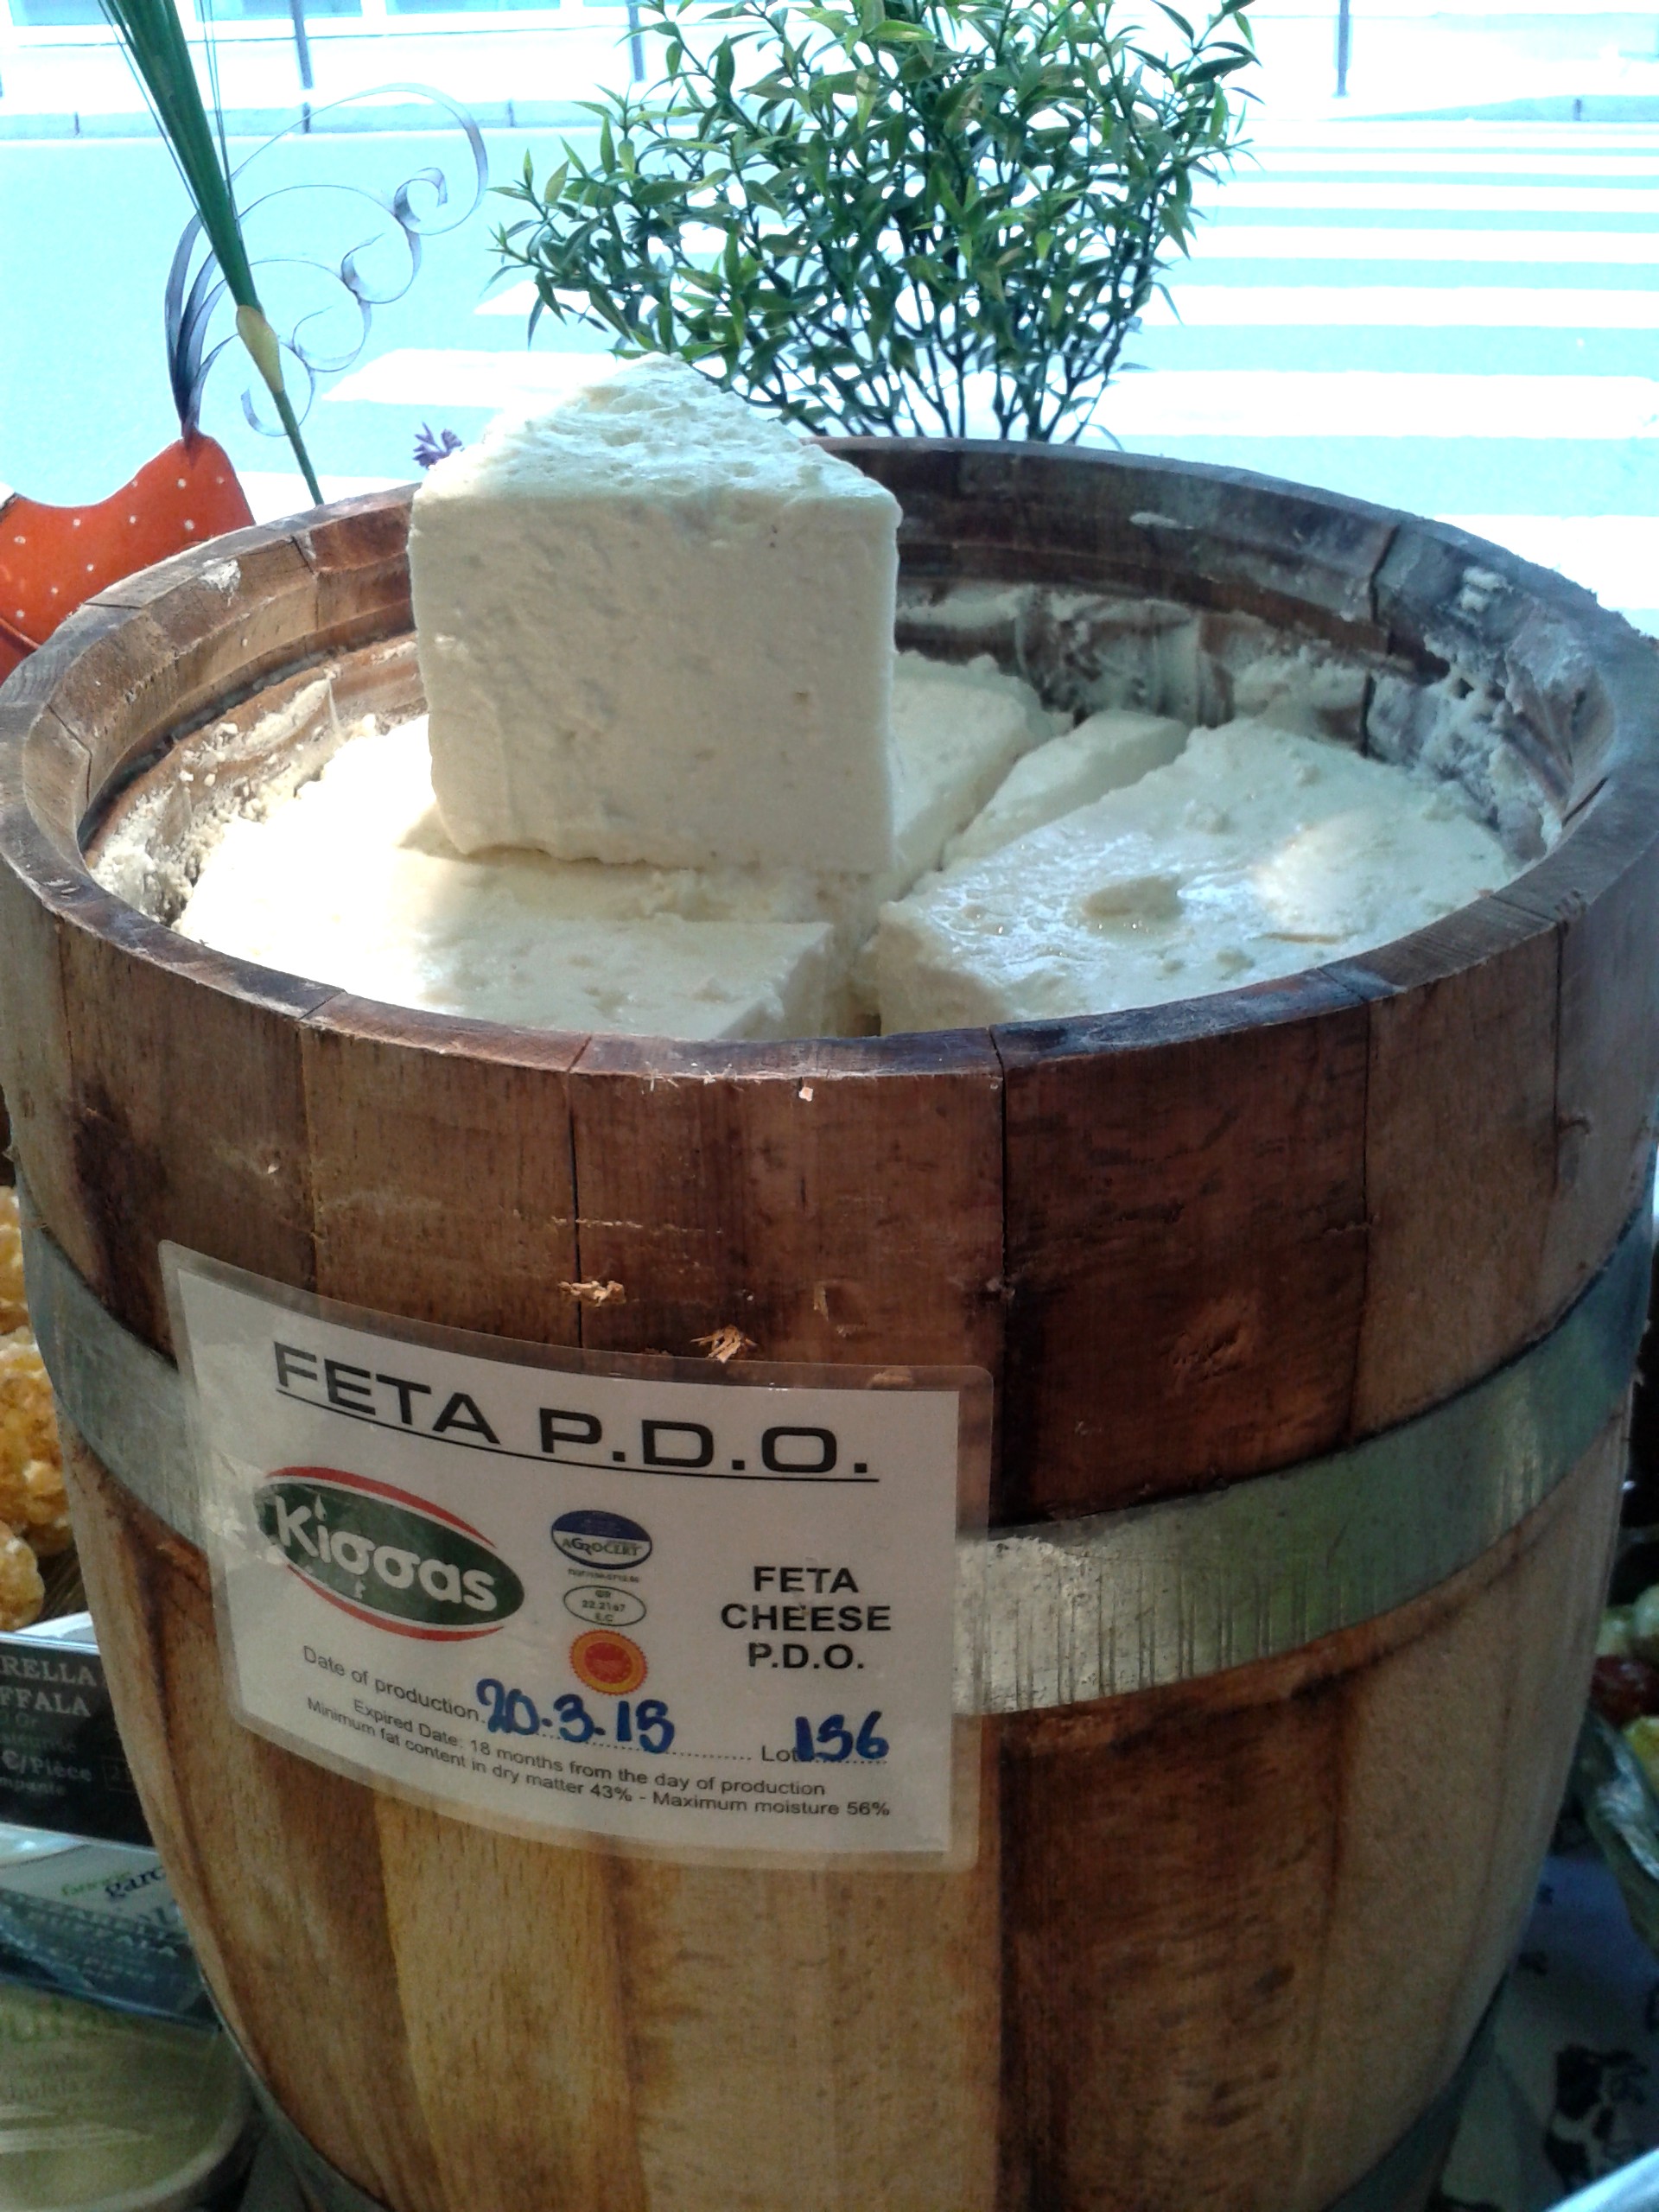 Feta PDO from the barrel